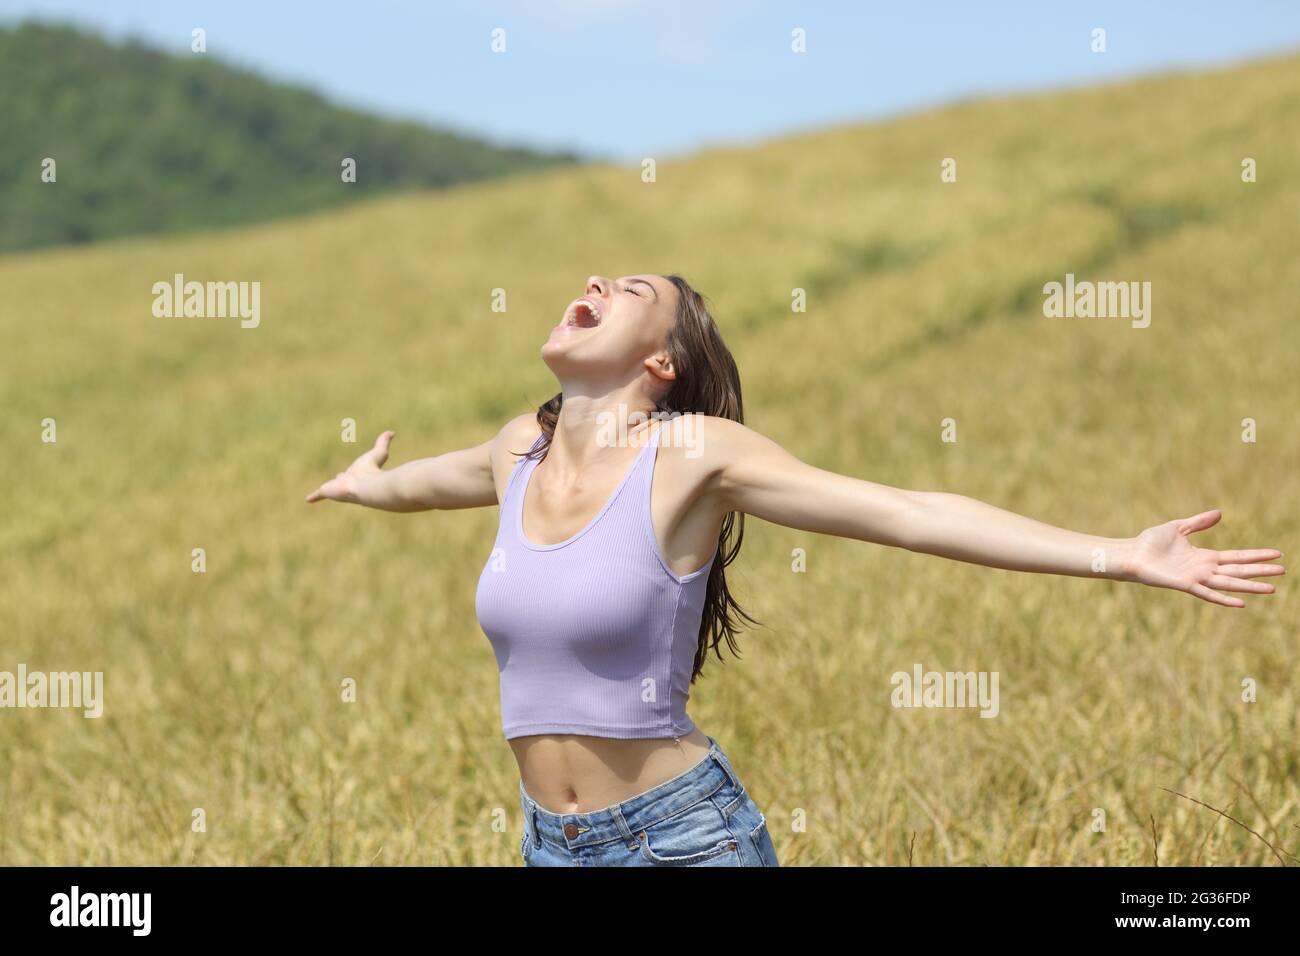 Aufgeregte Frau, die in einem Weizenfeld schreit, das die Arme ausstreckt Stockfoto